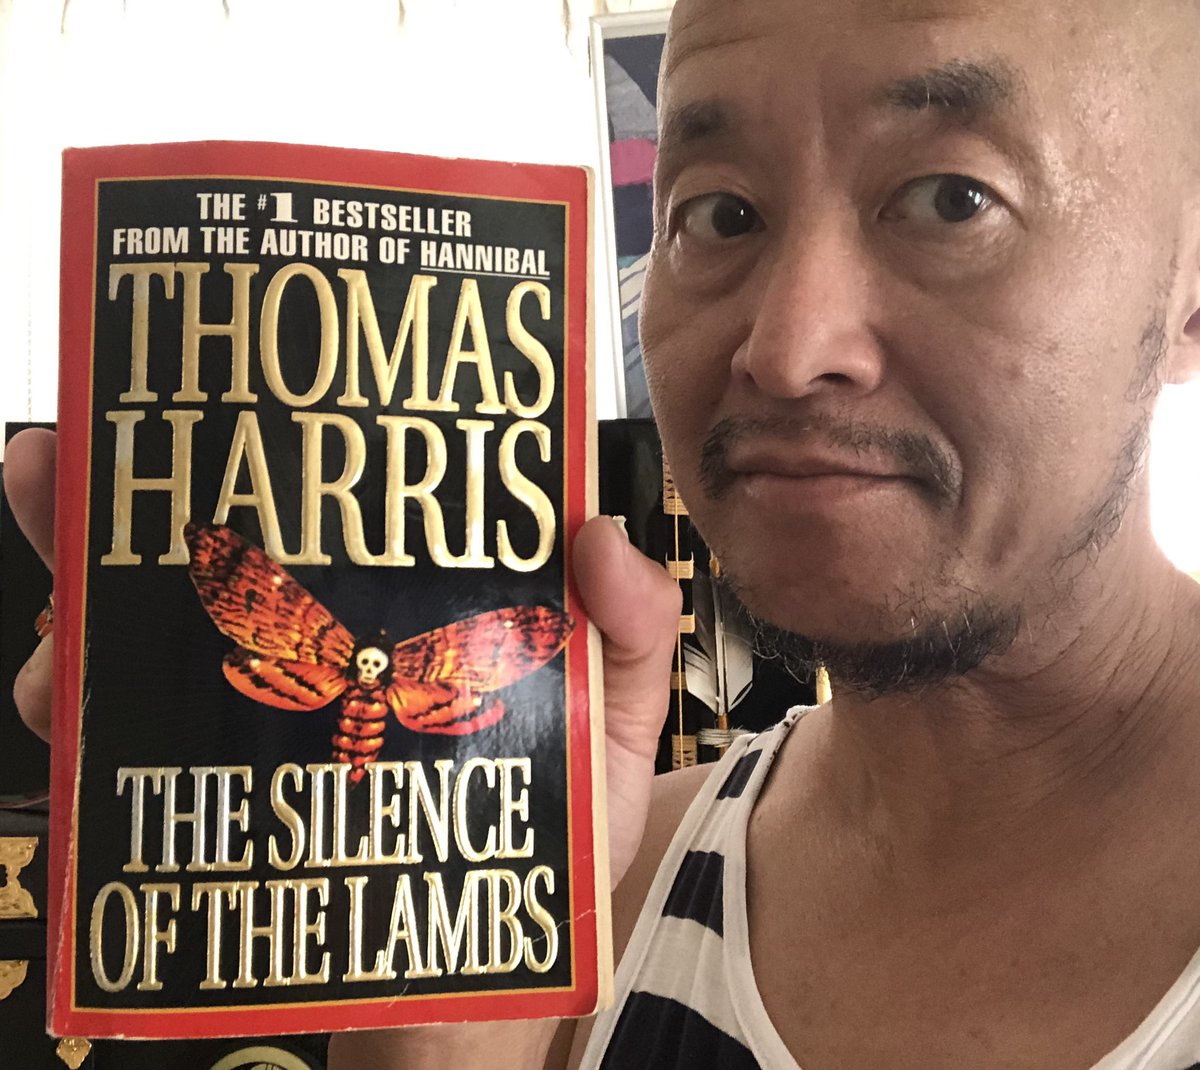 読書週間！
●#ThomasHarris 
#TheSilenceOfTheLambs
#羊たちの沈黙
緊張感があっておもろー